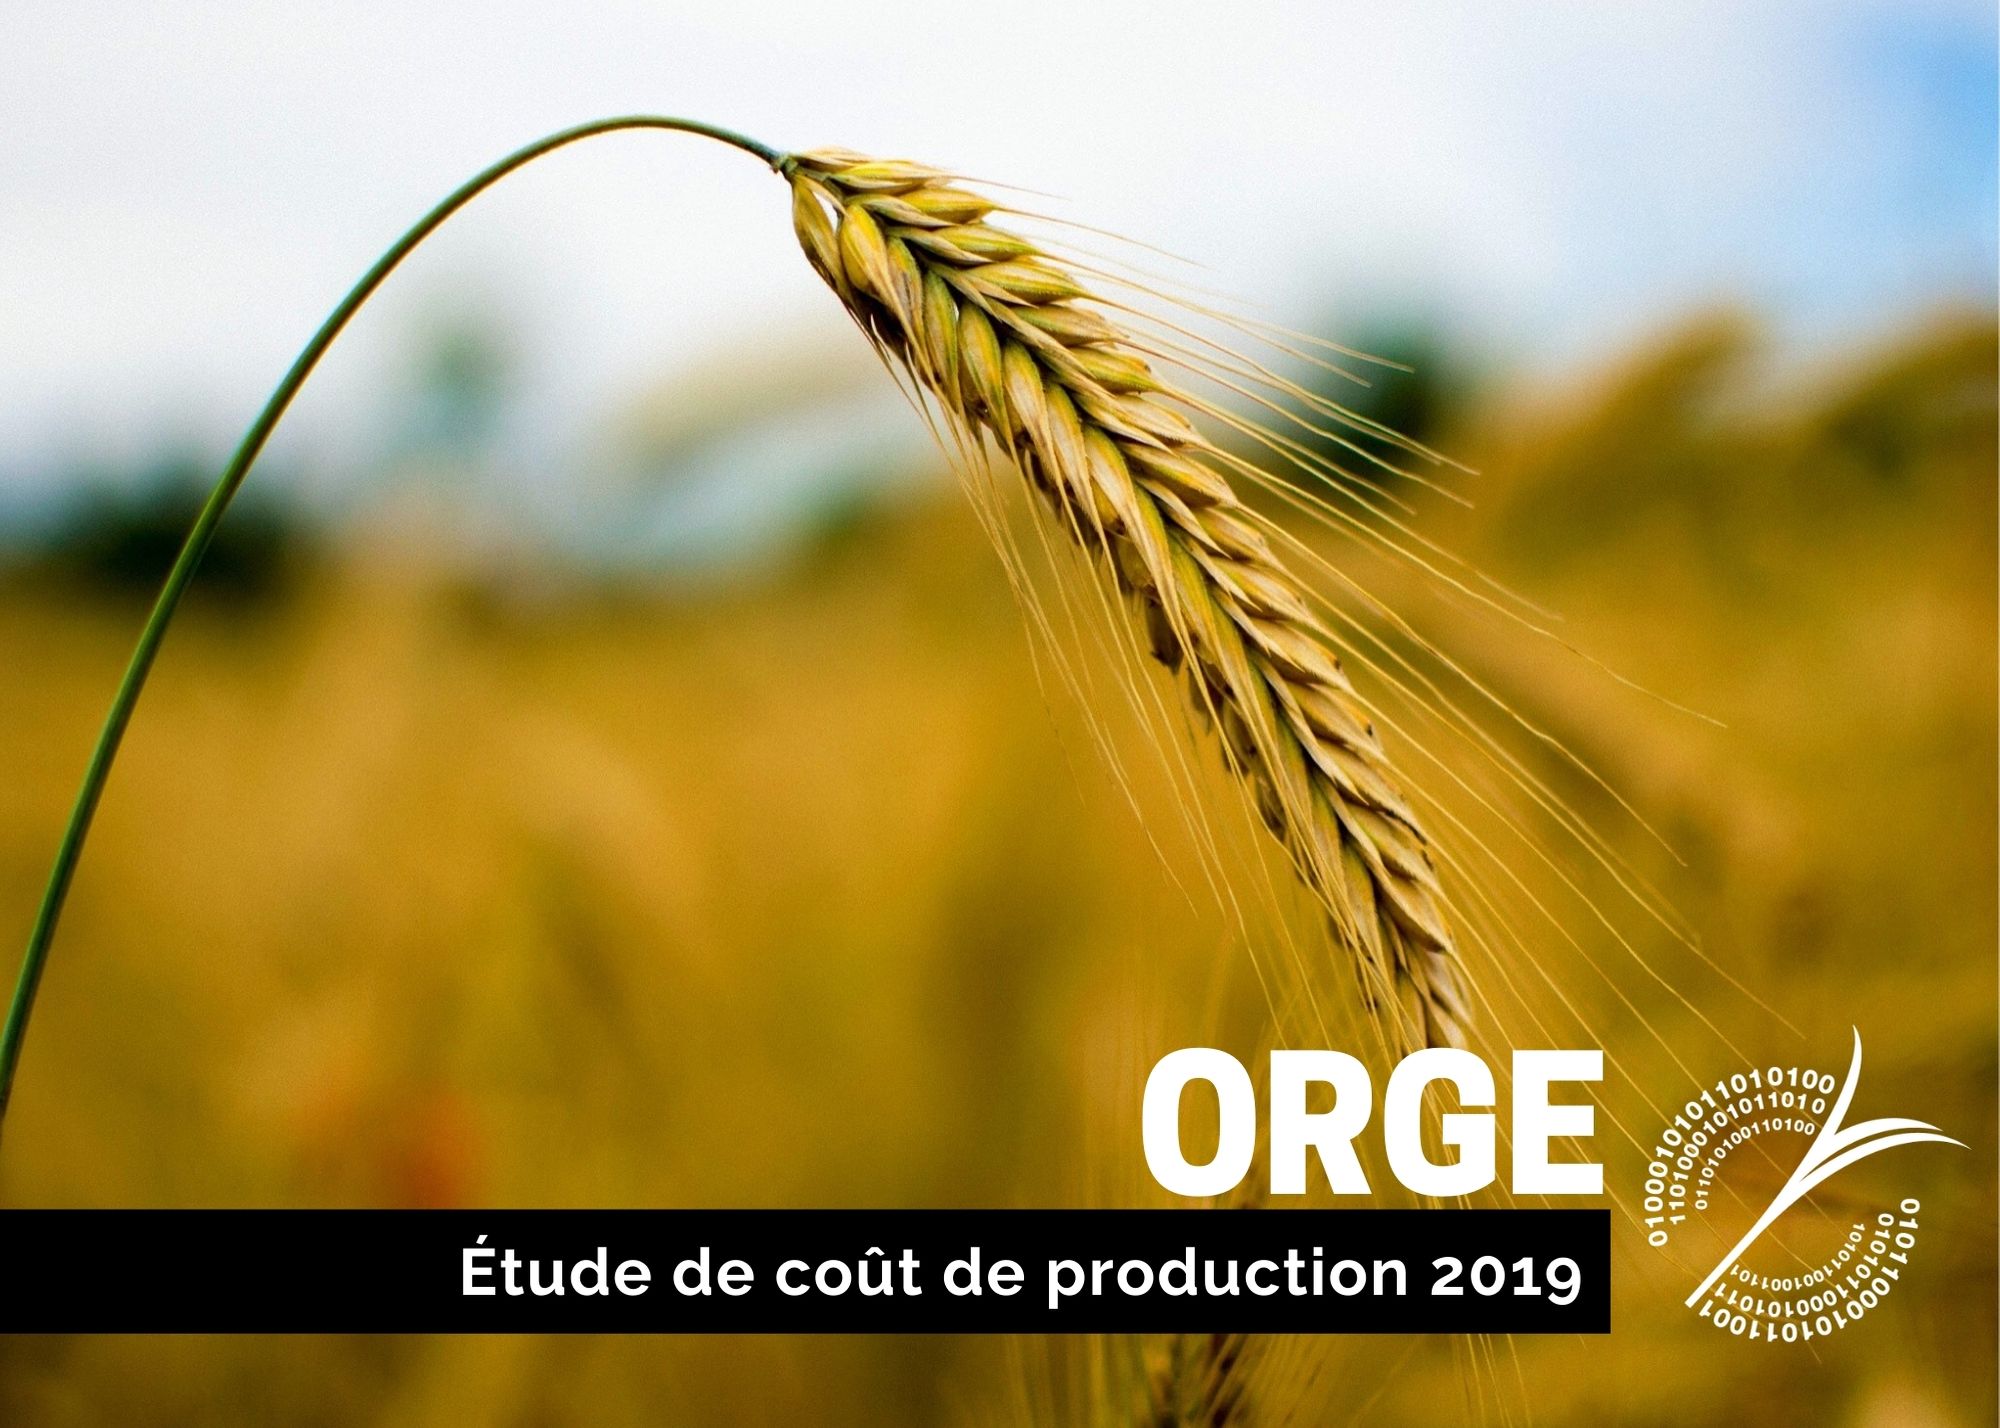 Études de coûts de production : SOMMAIRE DU COÛT DE PRODUCTION DE L'ORGE - 2019